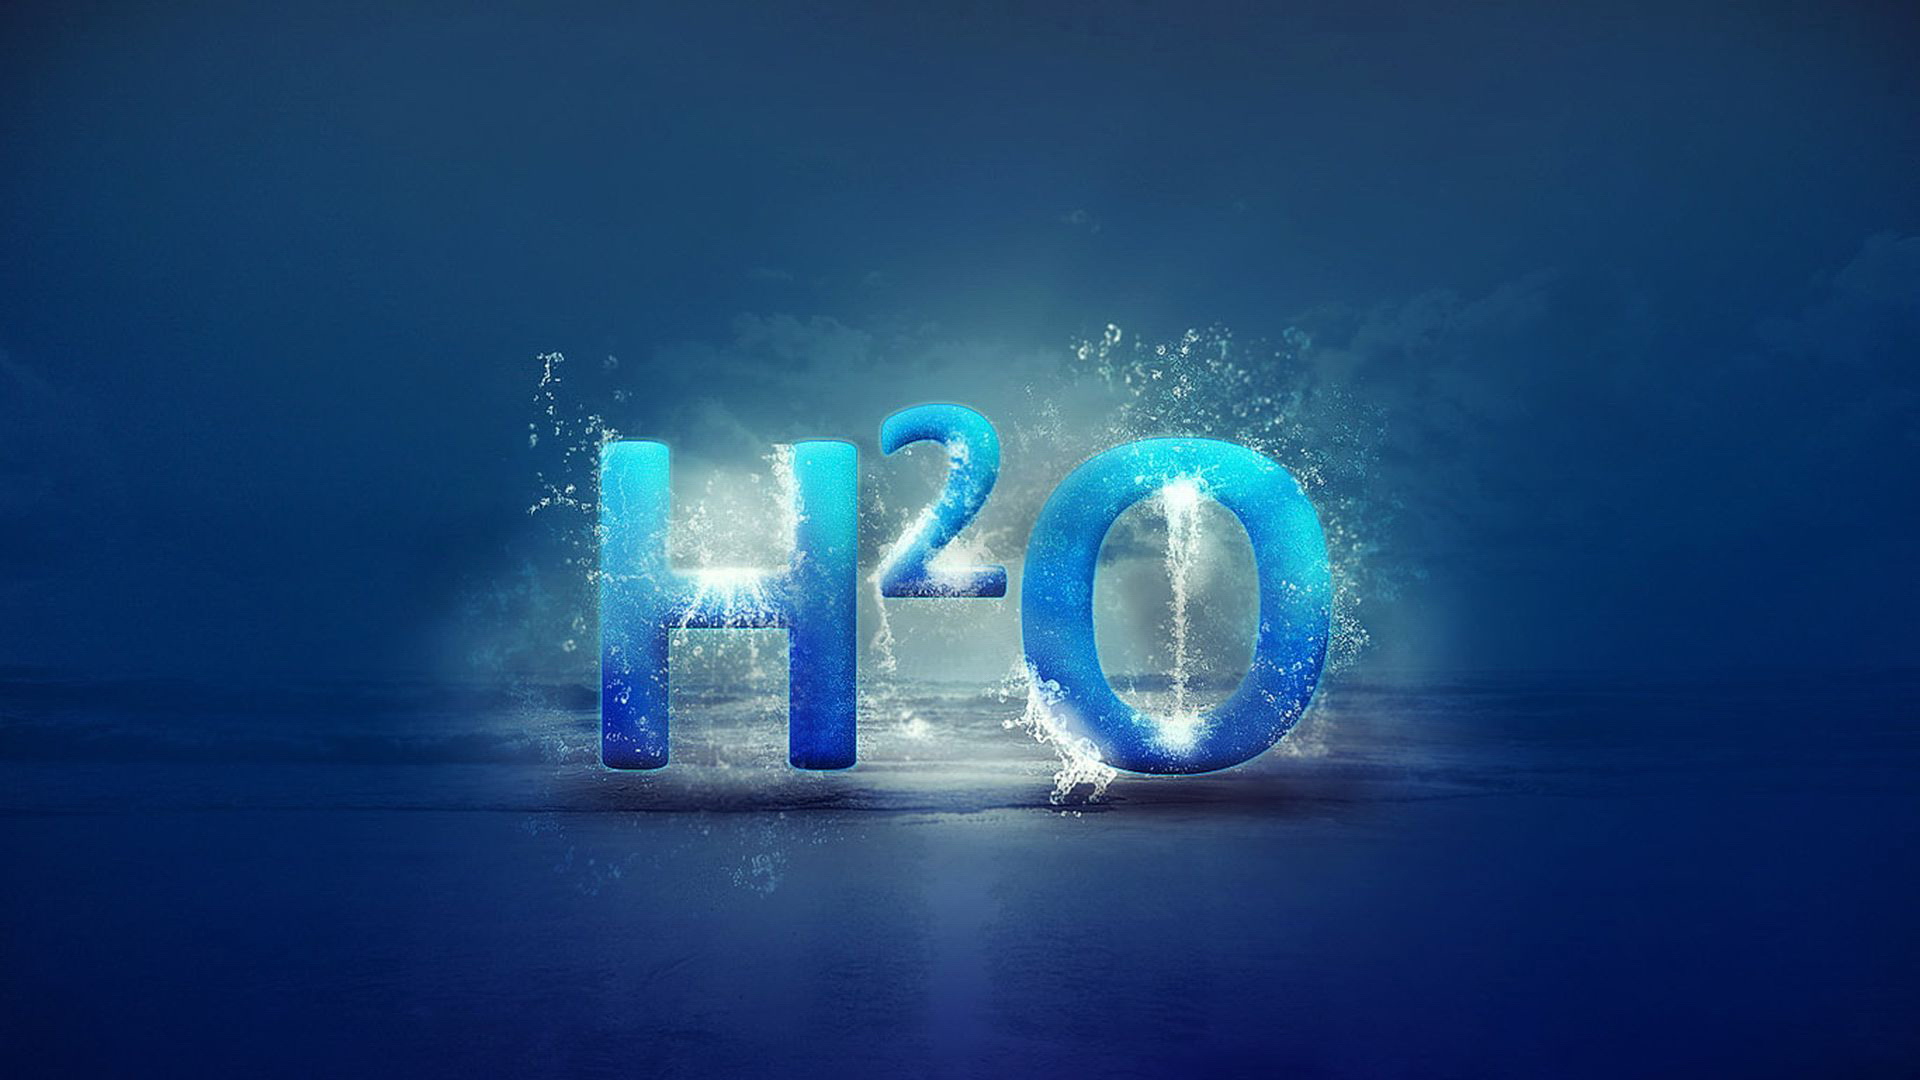 вода h2o картинки